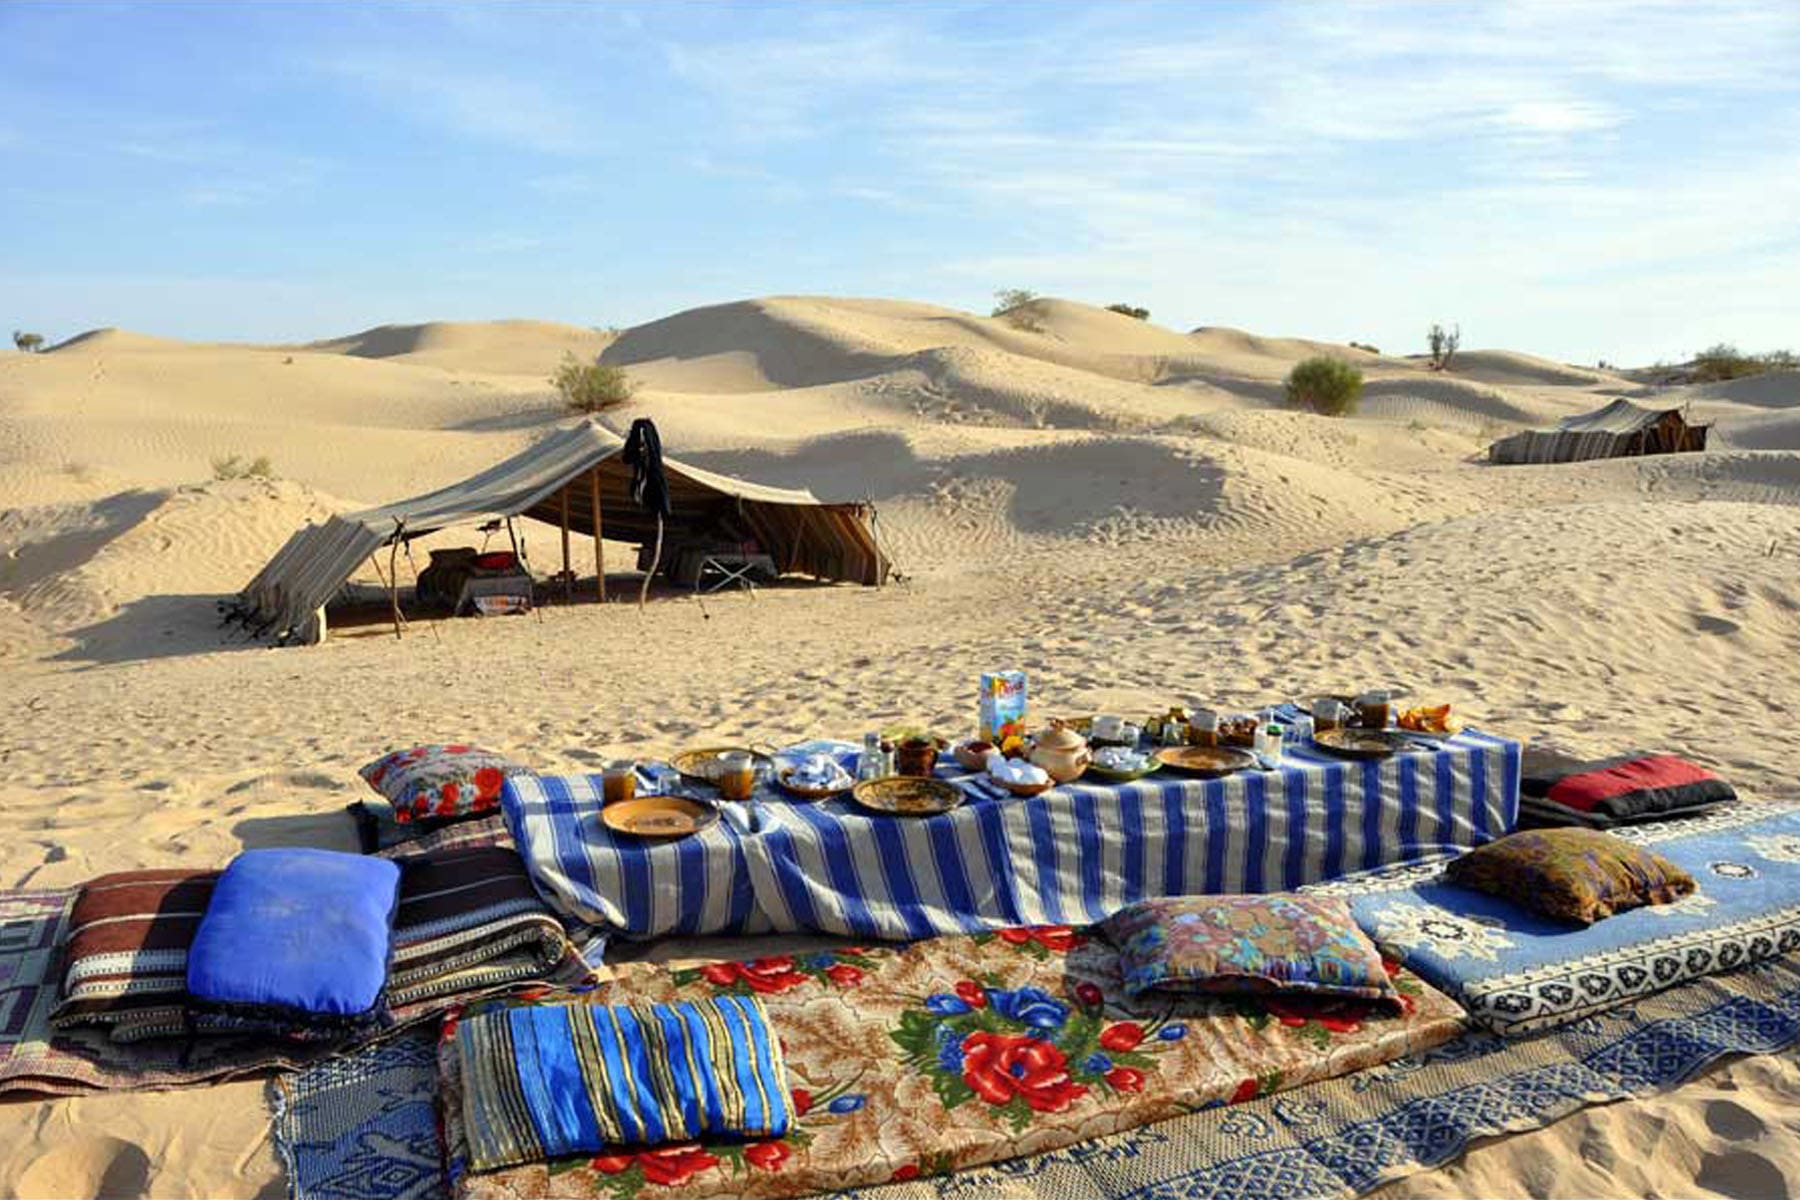 Les vacances en Tunisie offrent une expérience unique pour les voyageurs en quête d'aventure, de culture et de paysages à couper le souffle. Parmi les joyaux cachés de ce pays, le Sahara tunisien se démarque comme l'une des destinations les plus captivantes. Dans cet article, nous allons explorer les merveilles de la Tunisie, en mettant l'accent sur l'exploration du Sahara, le plus grand désert chaud du monde. L'Appel du Sahara Tunisien Le Sahara tunisien est un lieu magique qui attire les voyageurs du monde entier. Sa vaste étendue de dunes de sable doré, ses oasis verdoyantes, et ses paysages lunaires en font un endroit incontournable pour les aventuriers et les amoureux de la nature. Que vous soyez un passionné de désert ou que vous souhaitiez simplement vivre une aventure inoubliable, le Sahara tunisien vous enchantera. Explorer le Désert en 4x4 Pour découvrir pleinement les mystères du Sahara tunisien, il n'y a rien de tel qu'une excursion en 4x4. Les circuits en 4x4 offrent une expérience immersive qui vous emmène au cœur du désert, où vous pourrez admirer des paysages à couper le souffle. Traversez les dunes de sable, visitez des villages nomades, et découvrez la culture bédouine. Les couchers de soleil dans le désert sont une expérience à ne pas manquer. Randonnée à dos de Chameau Si vous recherchez une aventure plus traditionnelle, une randonnée à dos de chameau est la meilleure option. Vous vous sentirez comme un véritable caravanier, parcourant les dunes de sable à un rythme paisible. Cette expérience unique vous permettra de vous connecter avec la nature et d'apprécier le calme du désert. Découvrir les Oasis Cachées Les oasis du Sahara tunisien sont de véritables oasis de paix, offrant une échappée verdoyante au milieu des étendues arides. Ces lieux cachés regorgent de palmiers, de sources d'eau douce, et de jardins luxuriants. Vous pourrez vous détendre à l'ombre des palmiers, déguster des dattes fraîches, et vous rafraîchir dans les piscines naturelles. L'Artisanat Tunisien Lors de votre voyage en Tunisie, ne manquez pas l'occasion de découvrir l'artisanat local. Les marchés traditionnels regorgent de produits artisanaux, tels que les tapis berbères, les poteries, et les bijoux en argent. Vous pourrez rapporter chez vous des souvenirs uniques et soutenir les artisans locaux. La Gastronomie Tunisienne La Tunisie est également célèbre pour sa cuisine délicieuse. Ne manquez pas l'opportunité de déguster des plats traditionnels tels que le couscous, les tajines, et les pâtisseries sucrées. Les saveurs tunisiennes vous transporteront dans un monde de délices gastronomiques. les vacances en Tunisie, avec une exploration du Sahara tunisien, promettent une expérience inoubliable. Que vous optiez pour une aventure en 4x4, une randonnée à dos de chameau, la découverte d'incroyables oasis, ou l'exploration de la culture et de la cuisine locales, la Tunisie a tant à offrir. Alors, préparez vos bagages et partez à la découverte de ce joyau du Maghreb. Les paysages époustouflants et la chaleur de l'accueil tunisien vous laisseront des souvenirs impérissables.